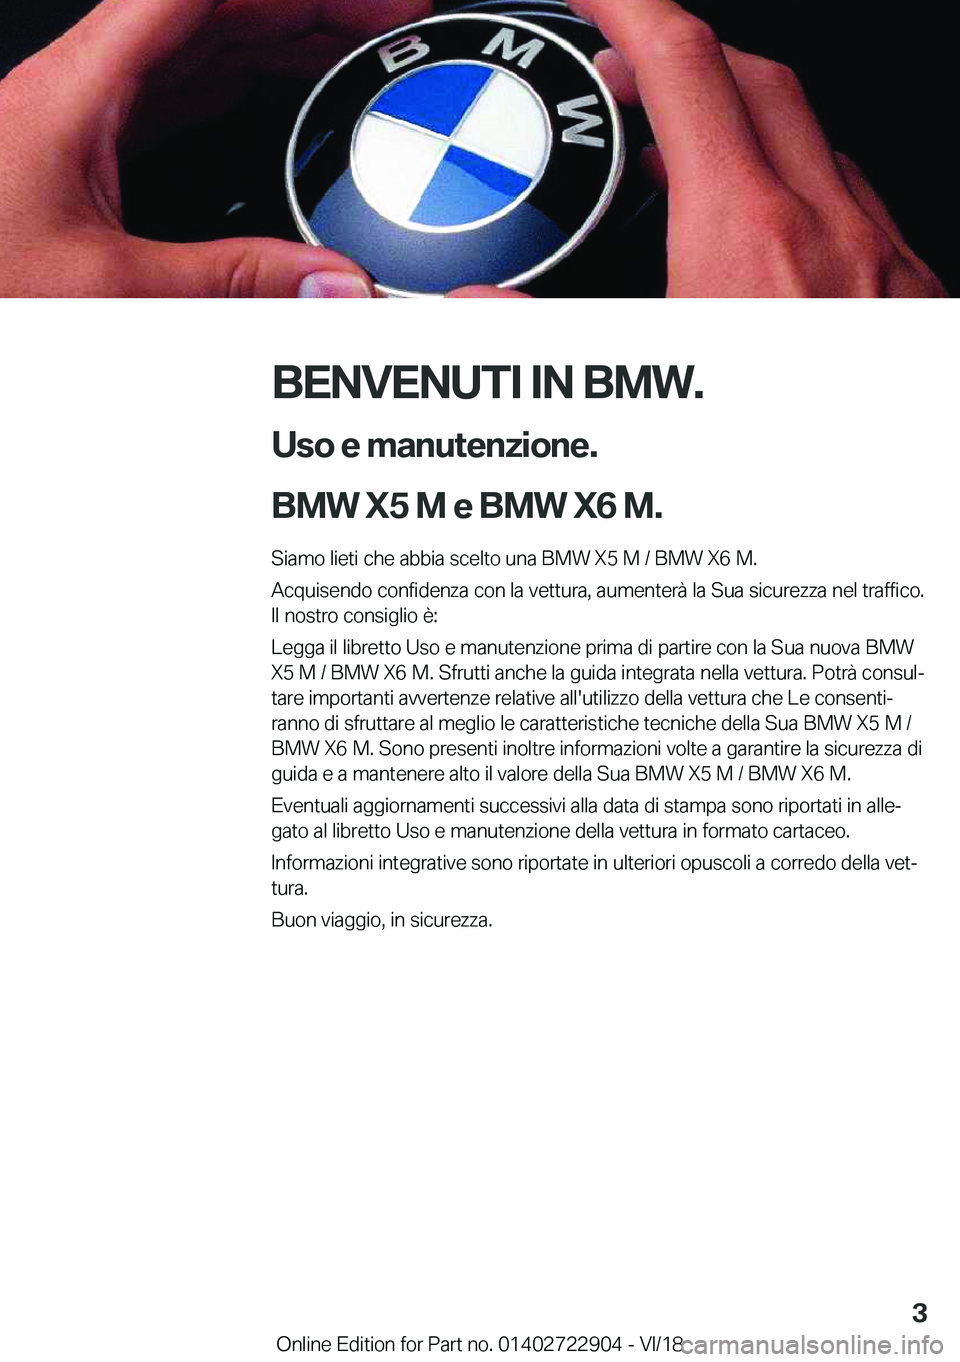 BMW X6 M 2019  Libretti Di Uso E manutenzione (in Italian) �B�E�N�V�E�N�U�T�I��I�N��B�M�W�.�U�s�o��e��m�a�n�u�t�e�n�z�i�o�n�e�.
�B�M�W��X�5��M��e��B�M�W��X�6��M�.
�S�i�a�m�o��l�i�e�t�i��c�h�e��a�b�b�i�a��s�c�e�l�t�o��u�n�a��B�M�W��X�5��M��/